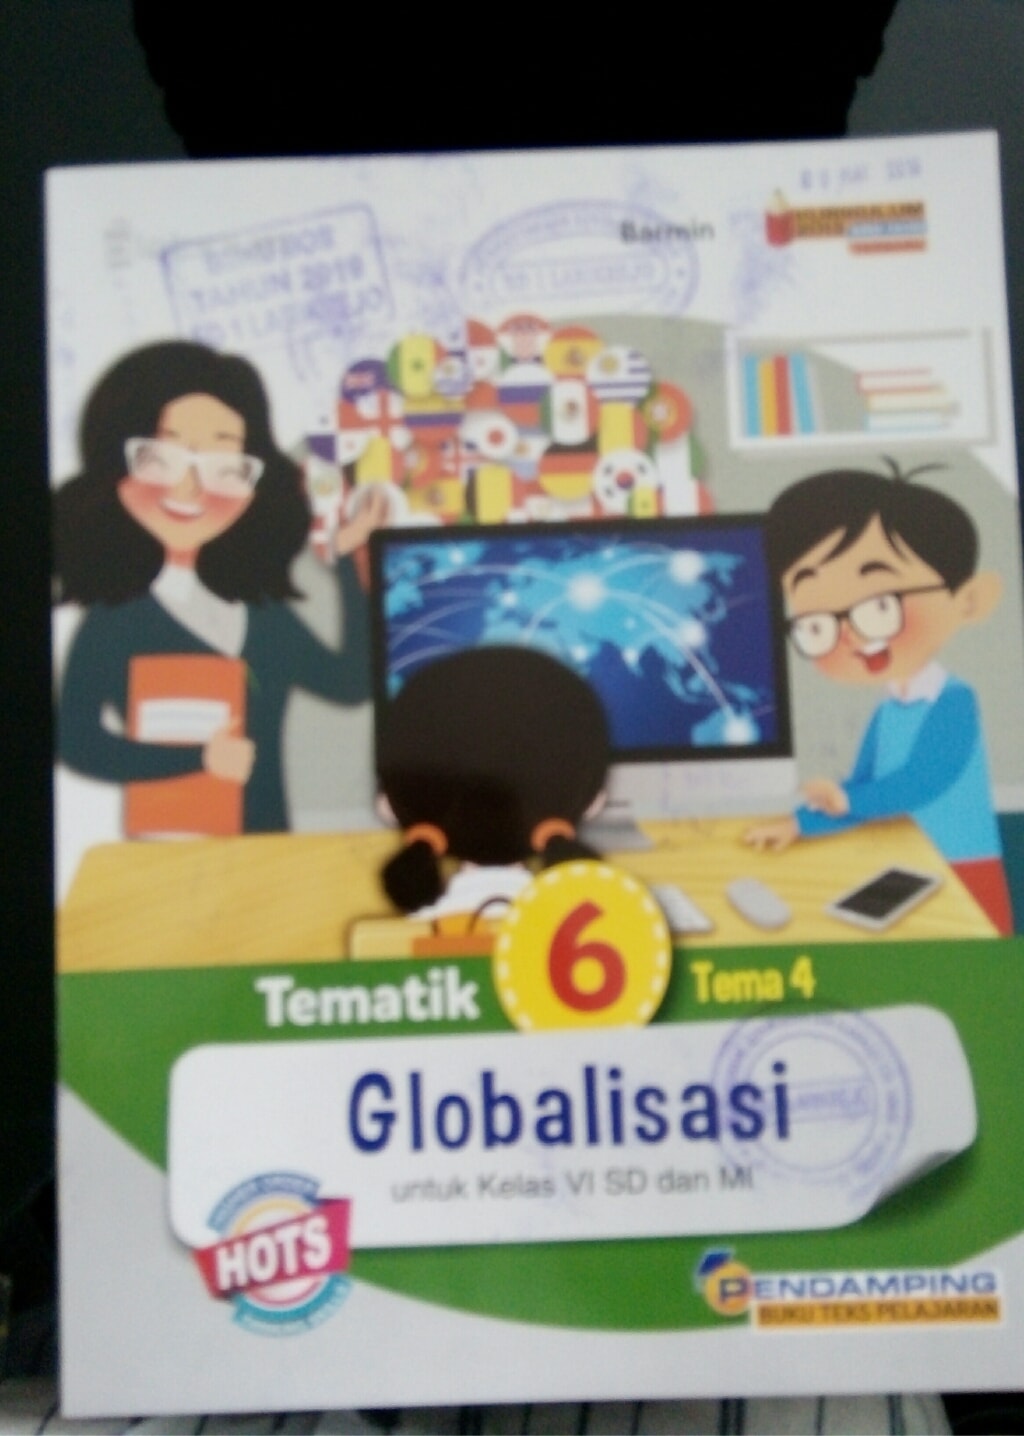 Globalisasi;tematik 6 Tema 4 untuk kelas VI SD dan MI